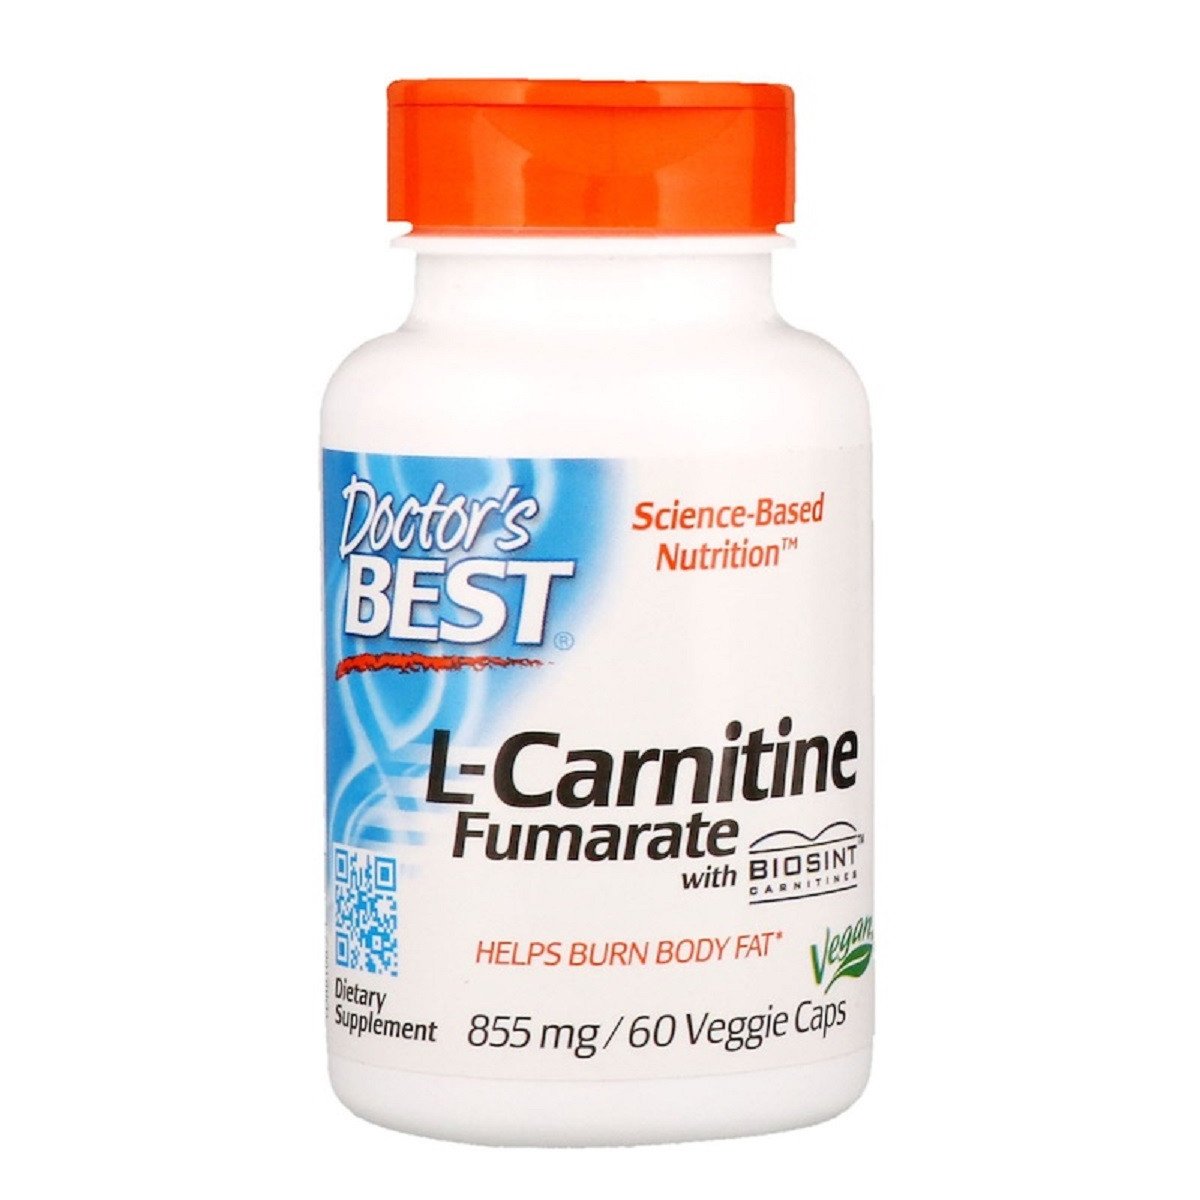 Л-карнитин Фумарат, L-Carnitine Fumarate, Doctor's Best, 855 мг, 60 капсул доктор бест,  мл, Doctor's BEST. L-карнитин. Снижение веса Поддержание здоровья Детоксикация Стрессоустойчивость Снижение холестерина Антиоксидантные свойства 